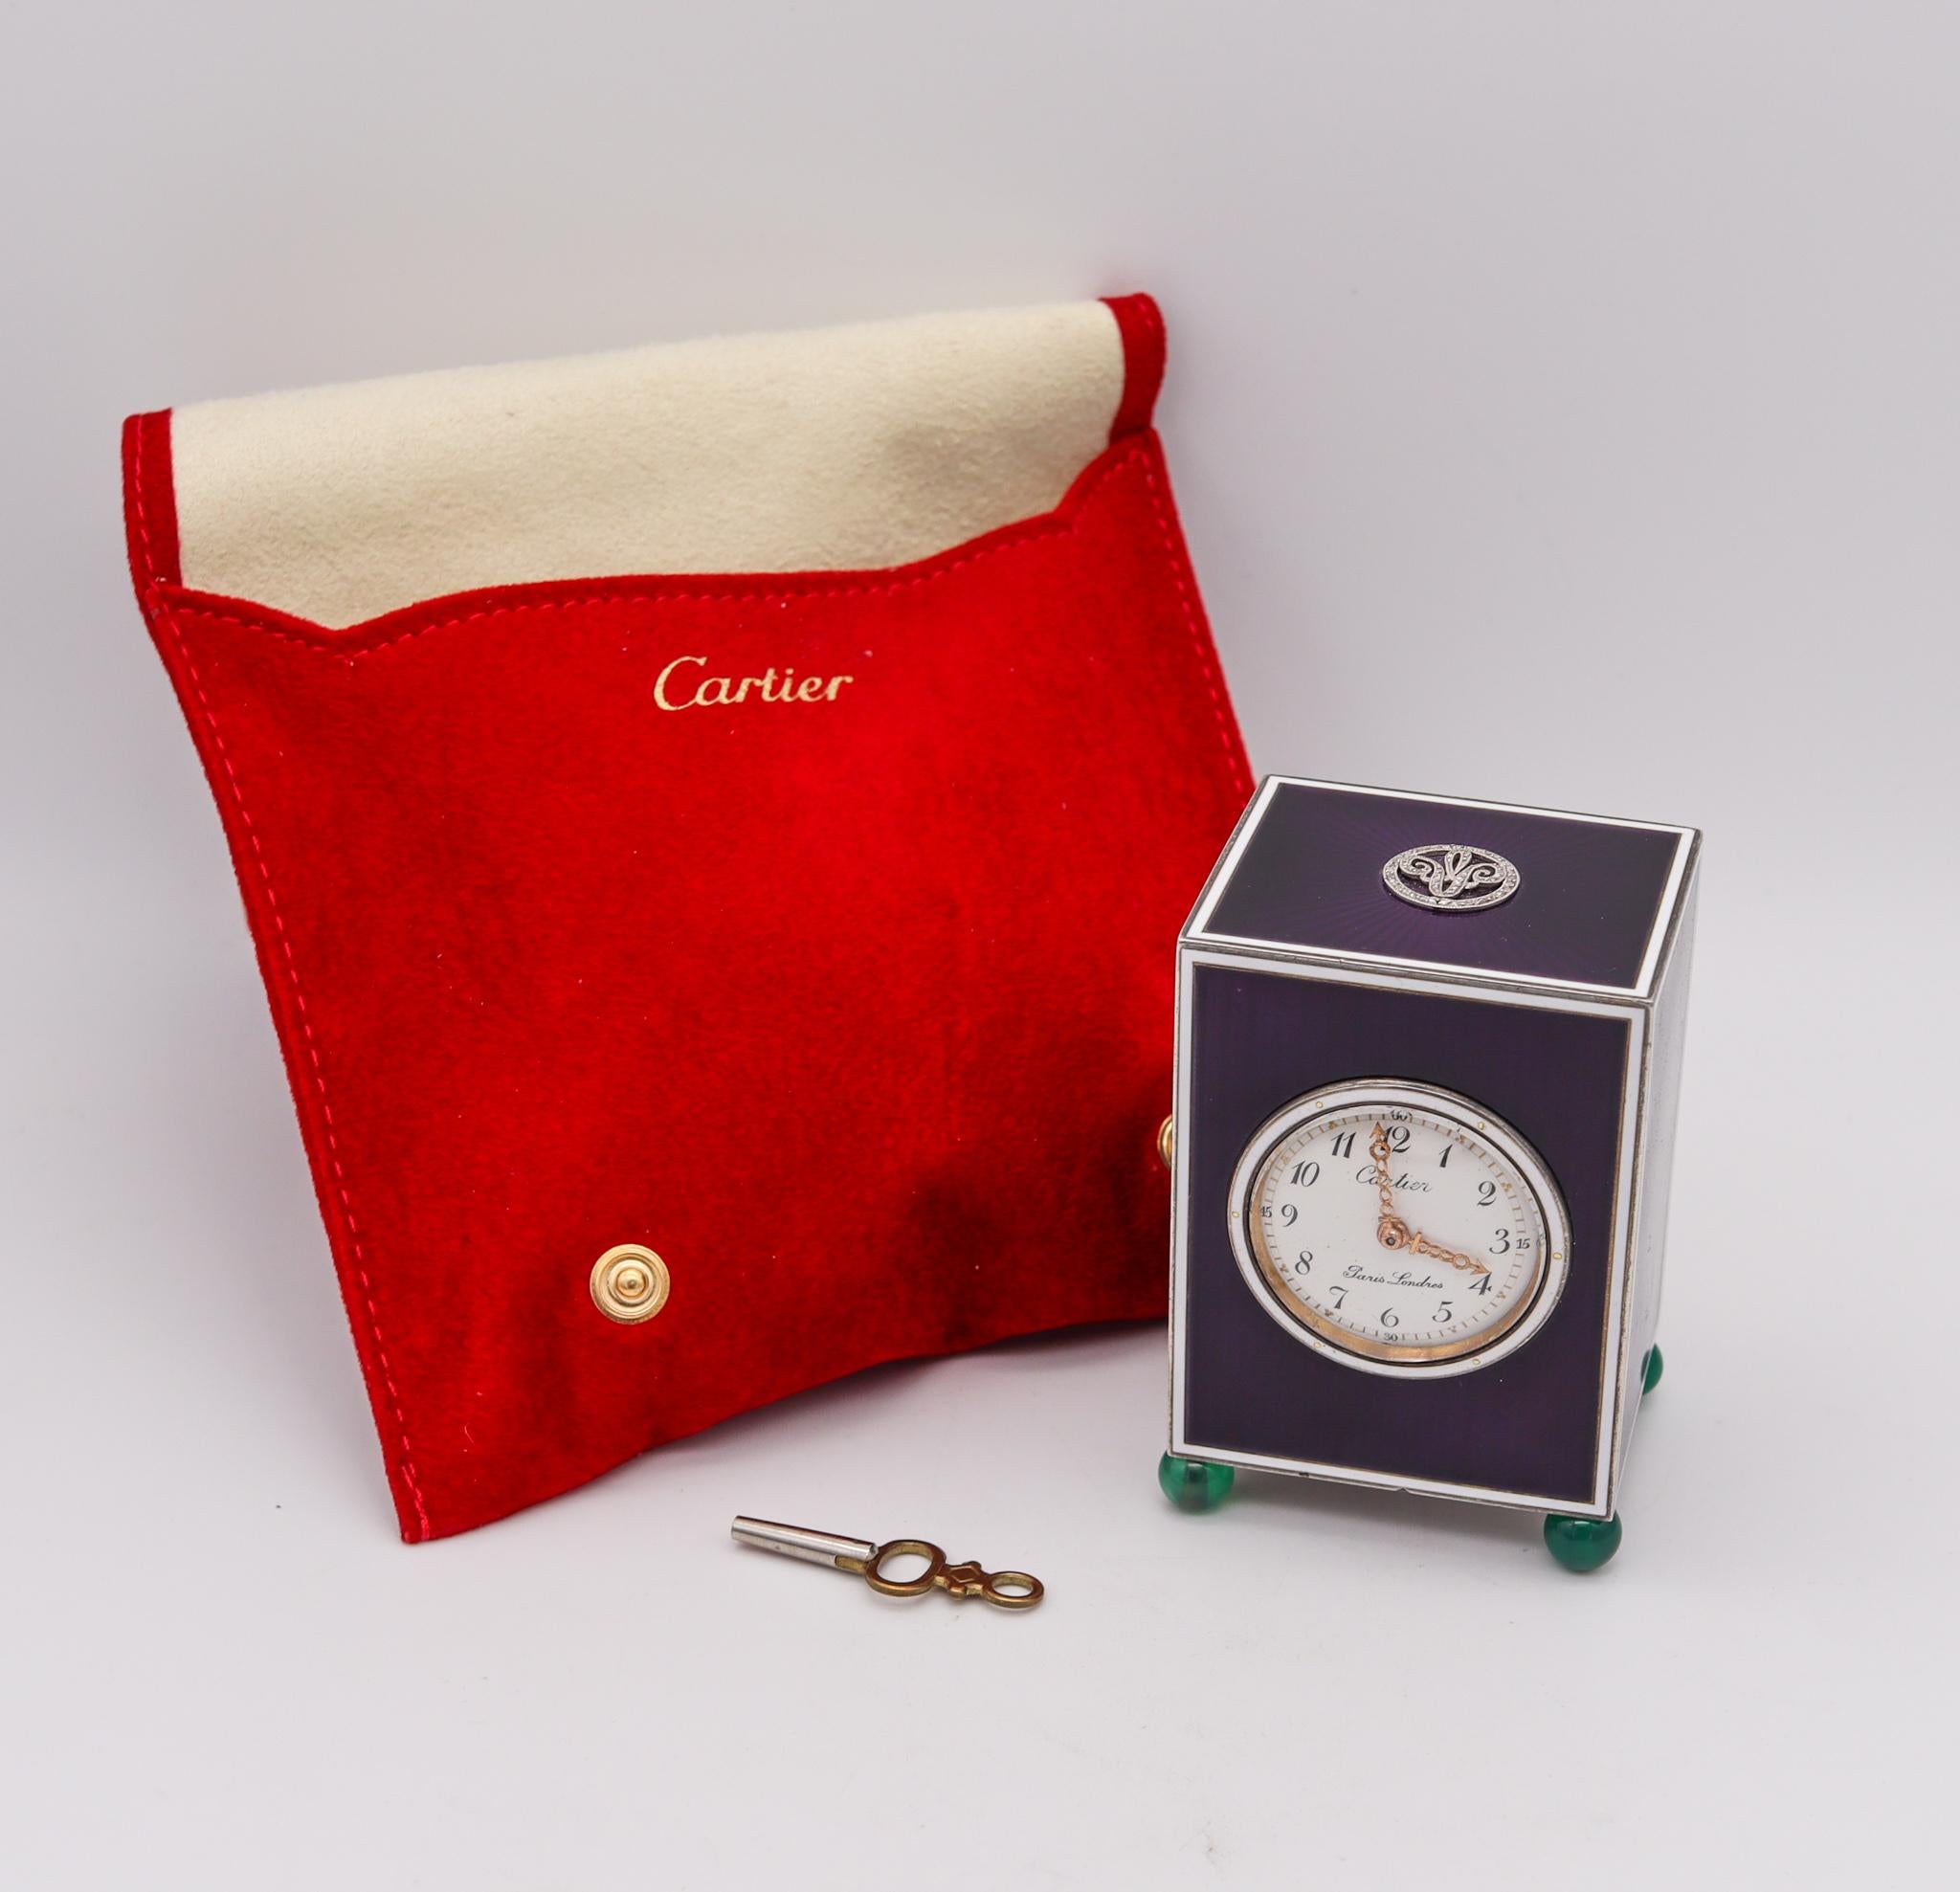 Pendule de bureau de la Belle Époque, conçue par Cartier.

Une impressionnante et magnifique horloge de bureau 